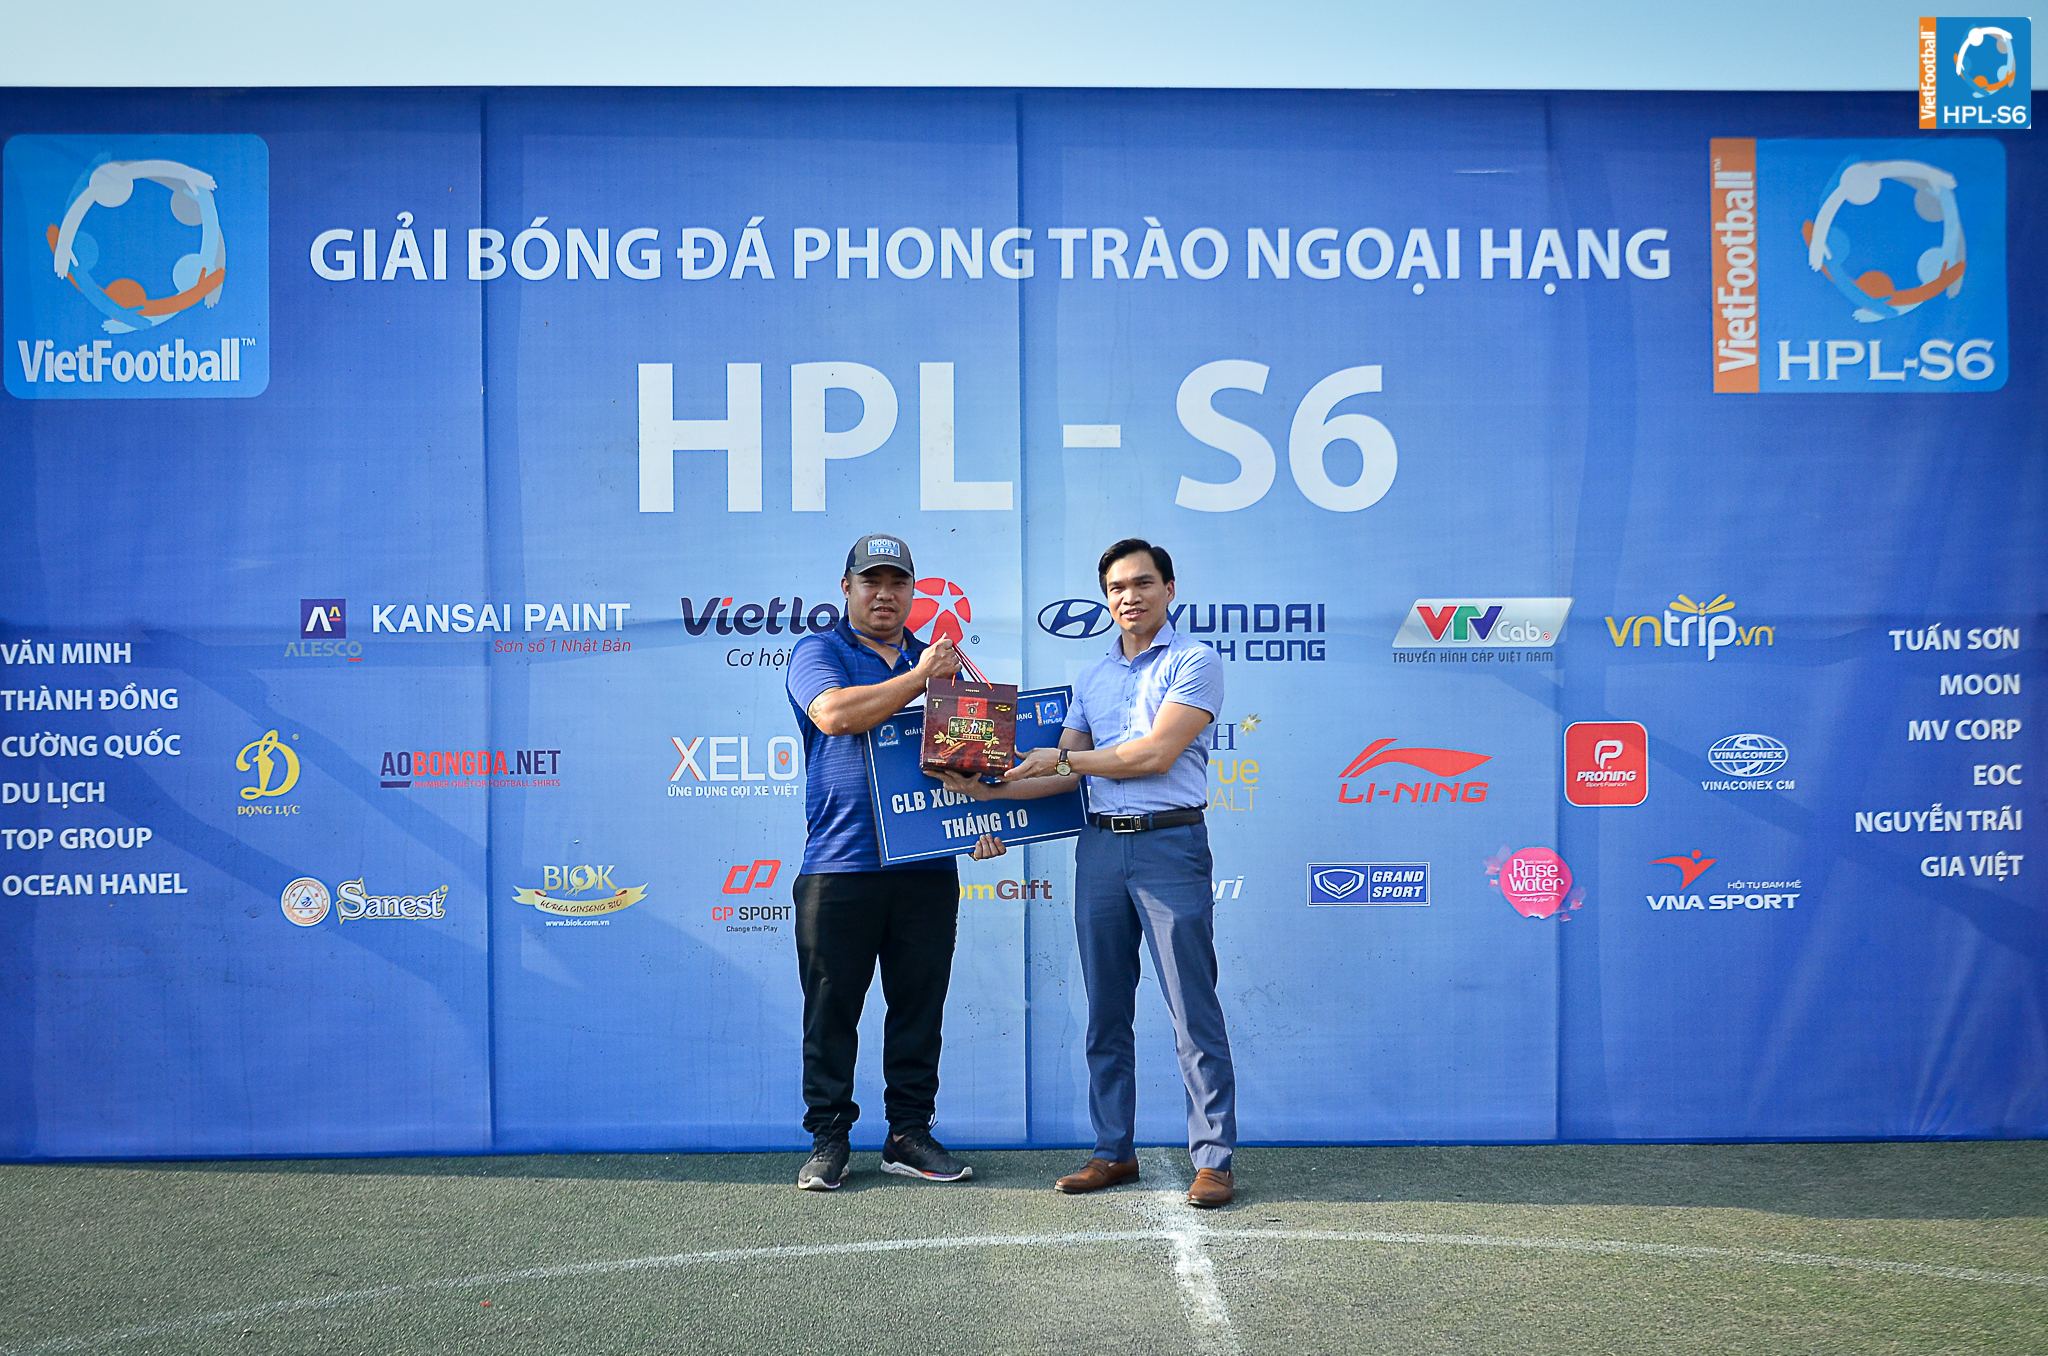 Hồng Sâm BIOK - Giải bóng đá HPL S6